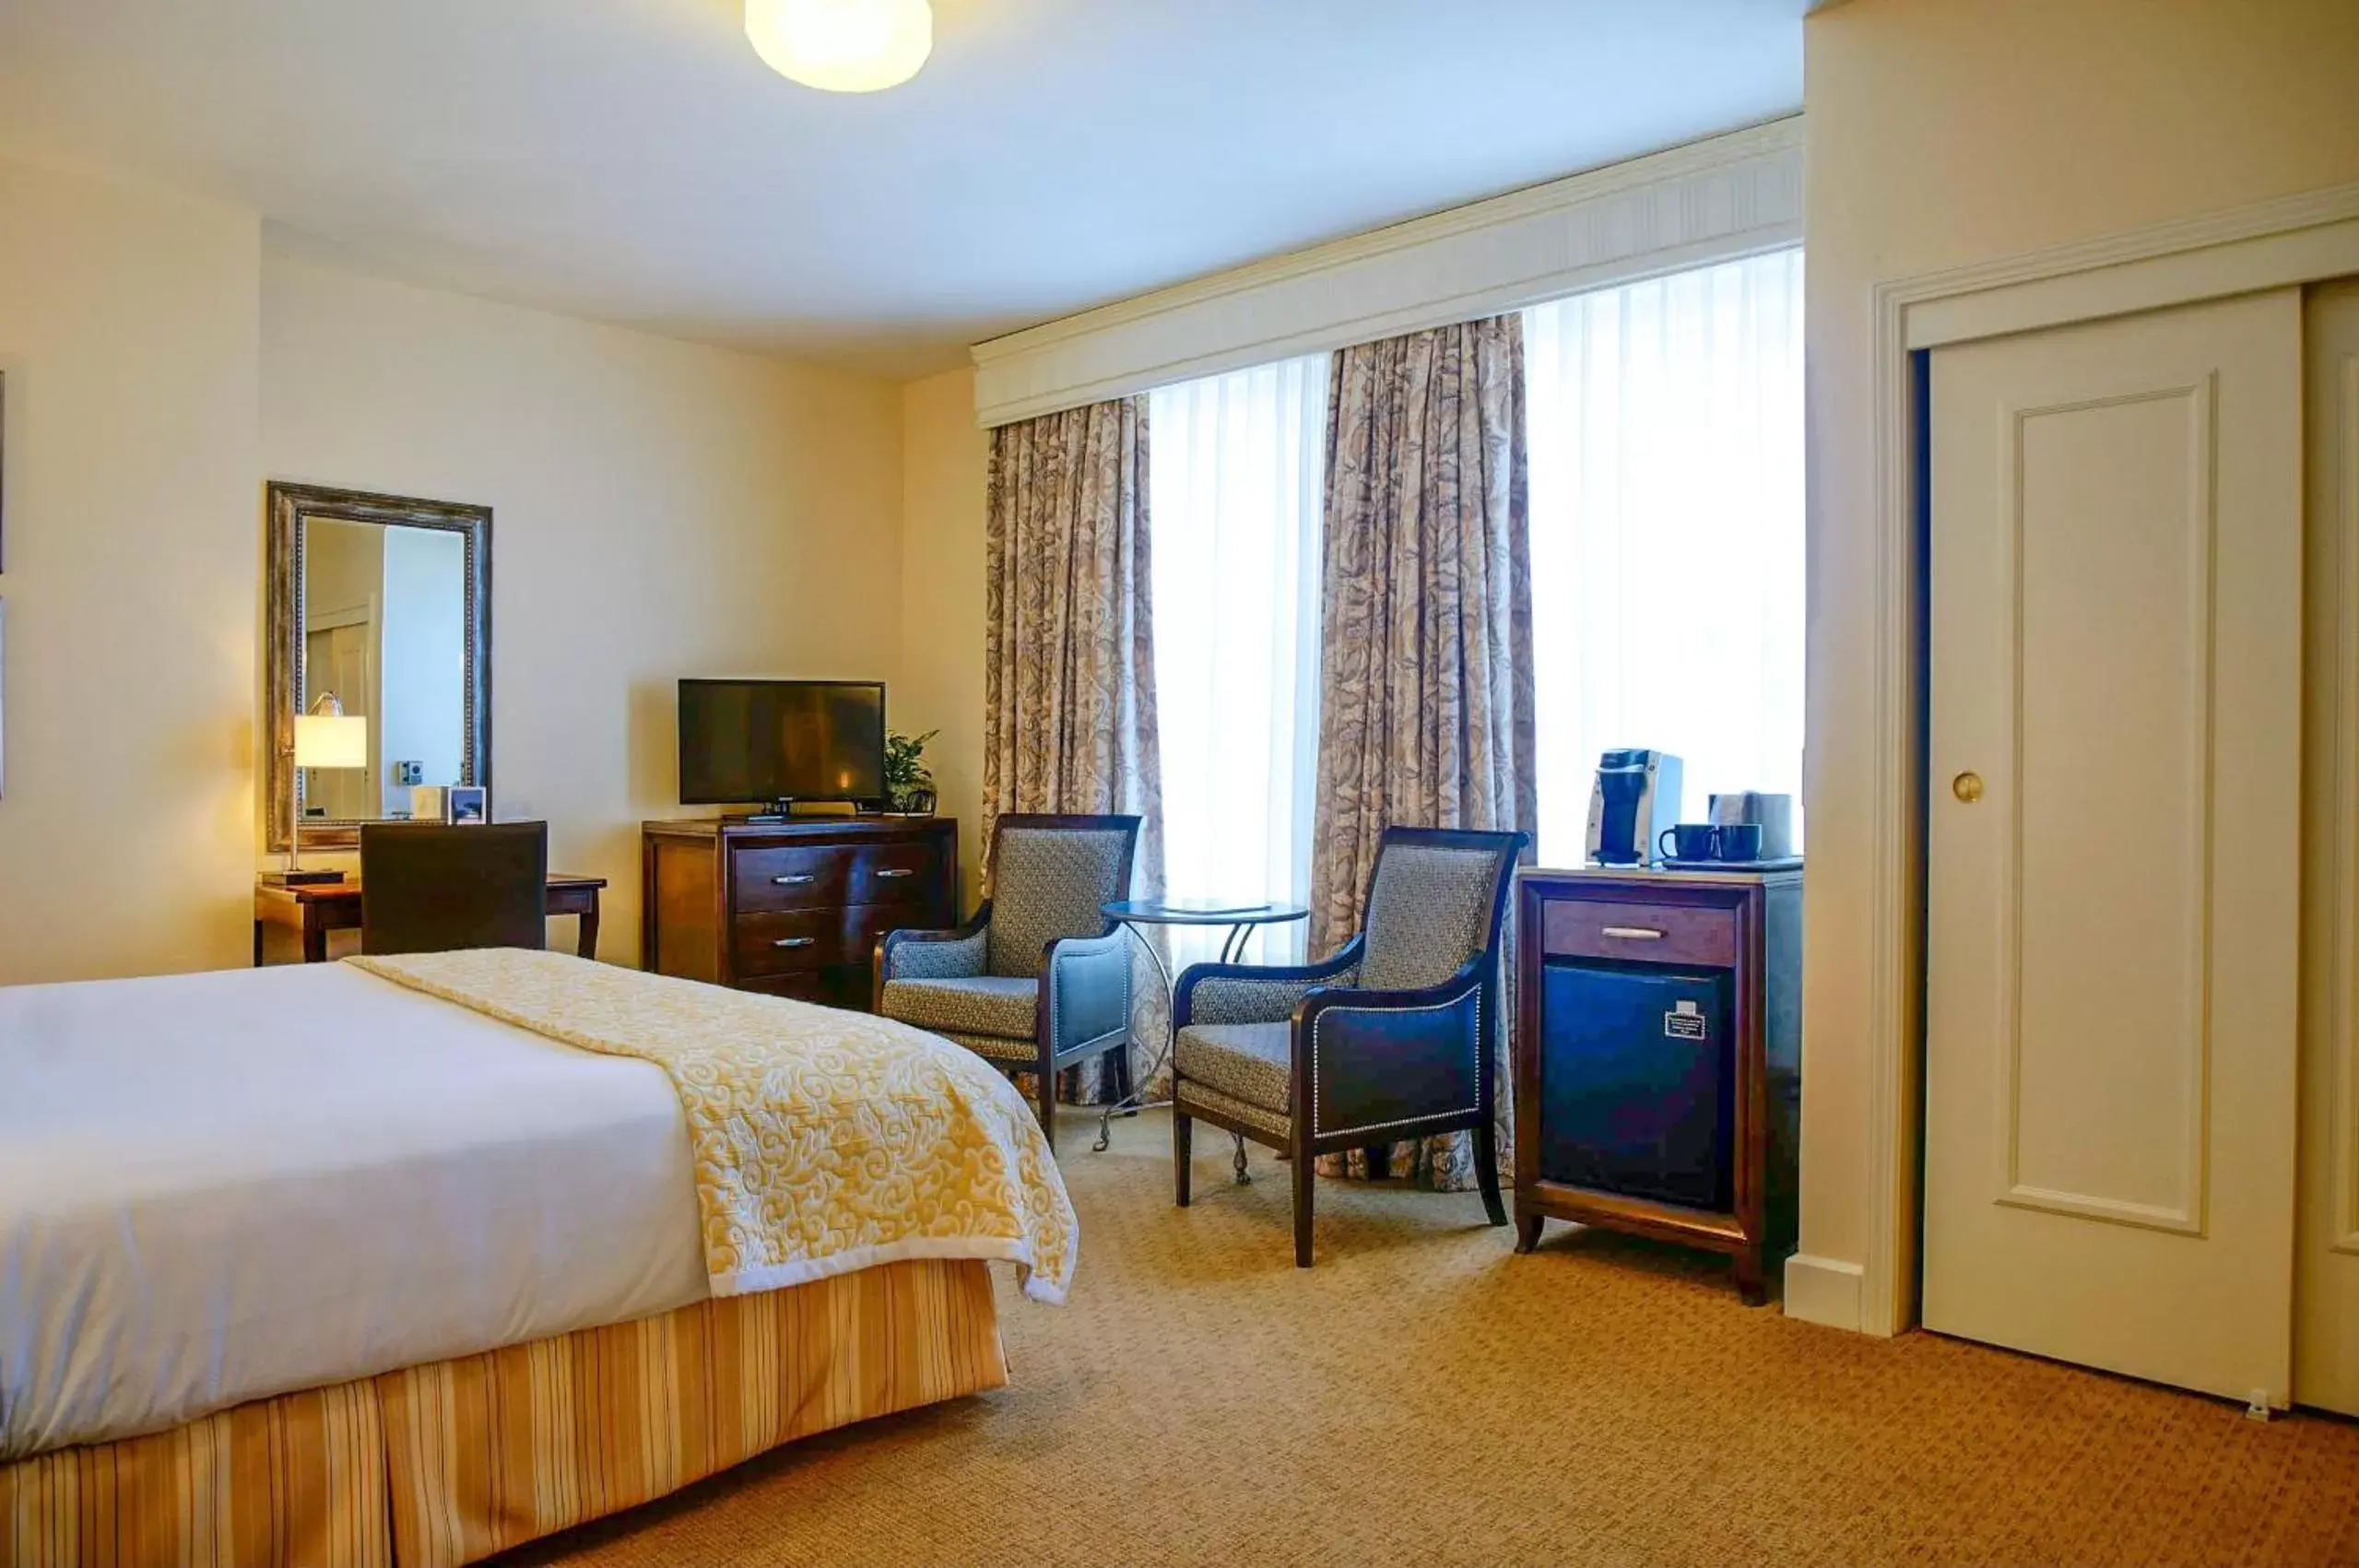 King Room in Hotel Santa Barbara